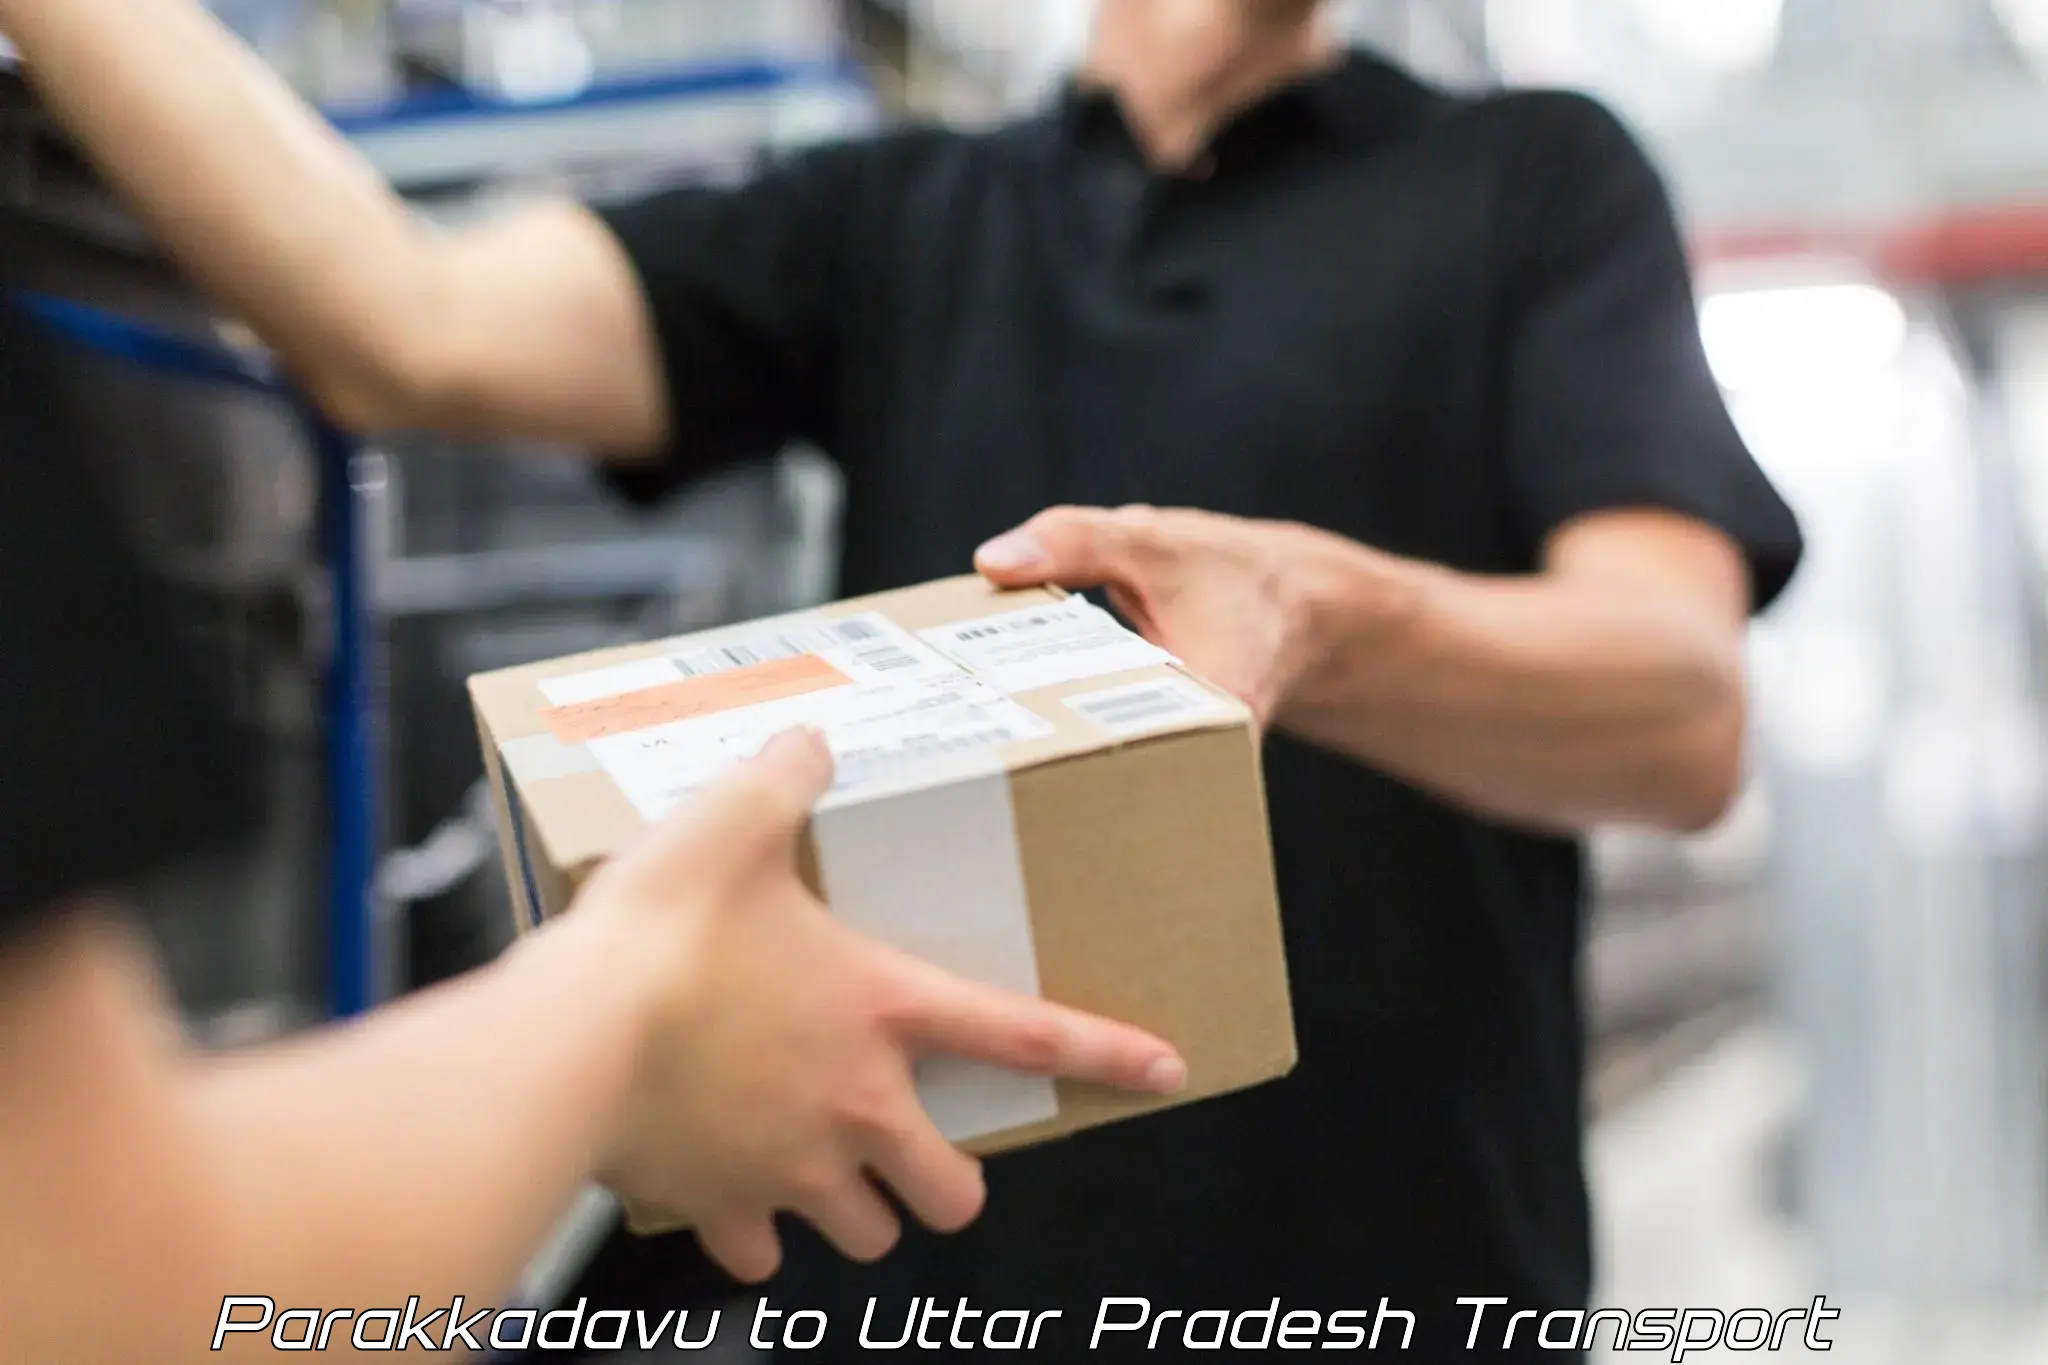 Luggage transport services Parakkadavu to Uttar Pradesh